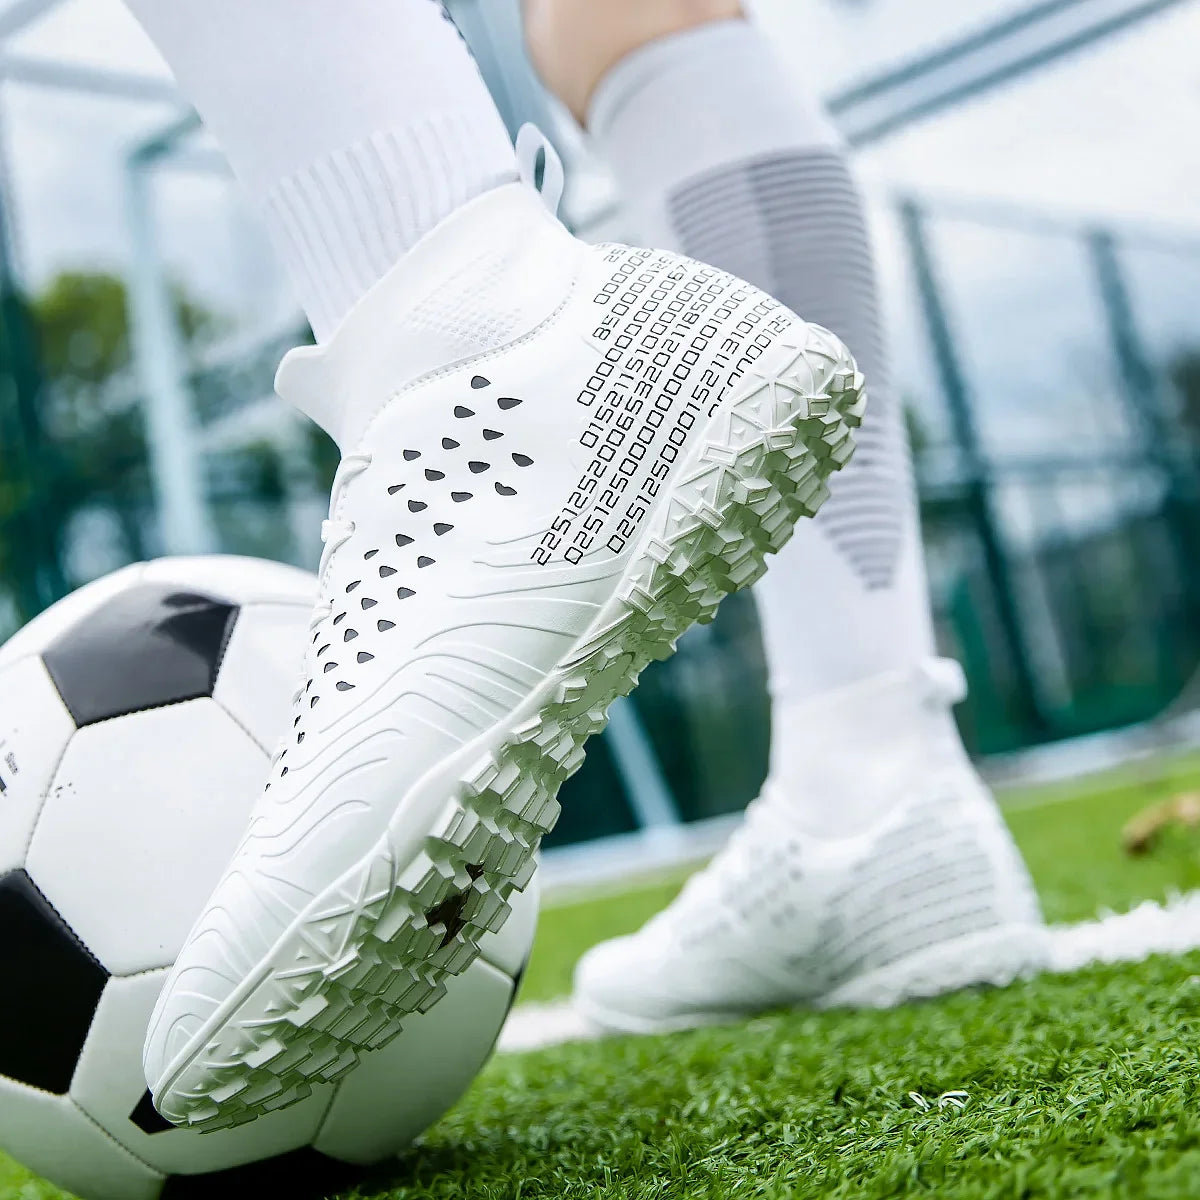 Buty piłkarskie z wysoką cholewką w wersji turf i lanki